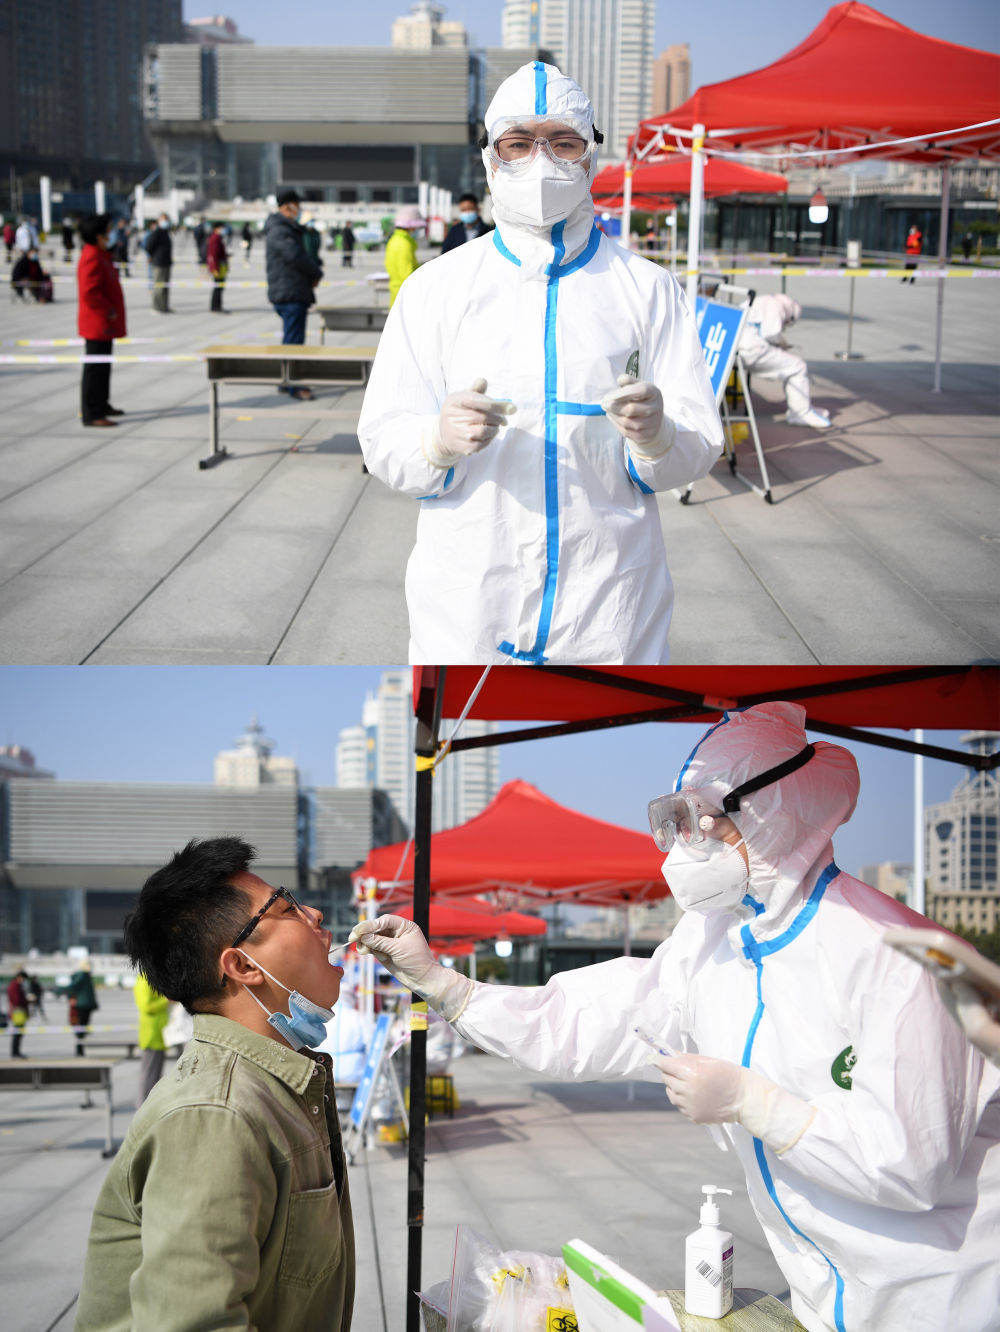 拼版照片：上图为甘肃省人民医院医务人员高婷婷在兰州市城关区东方红广场核酸检测点；下图为高婷婷（右）在核酸检测点为市民核酸采样（10月22日摄）。新华社记者 陈斌 摄